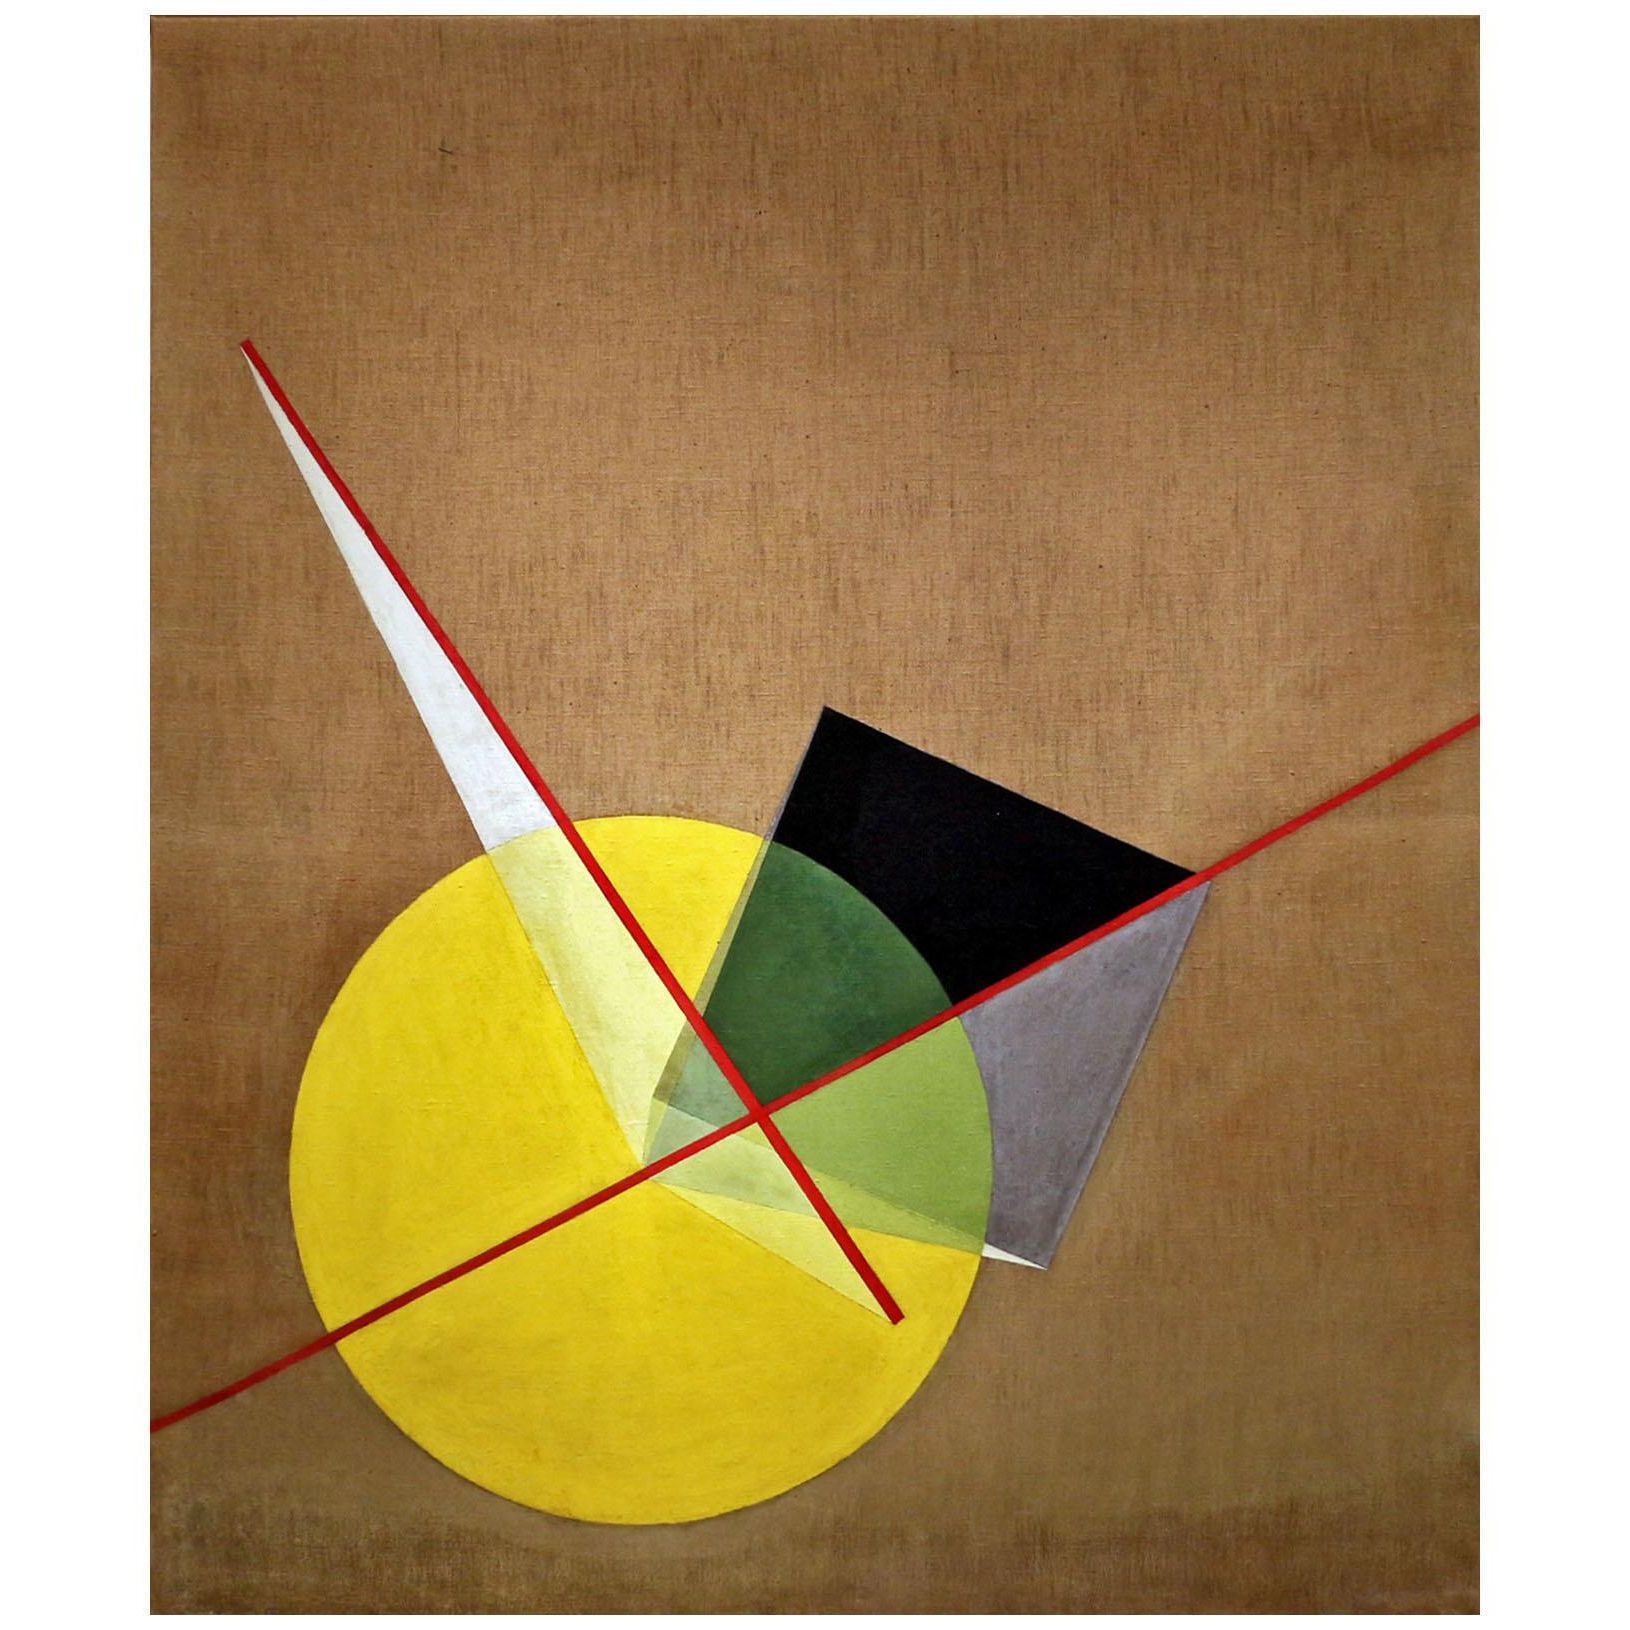 Laszlo Moholy-Nagy. Yellow Circle and Black Square. 1921. MoMA NY